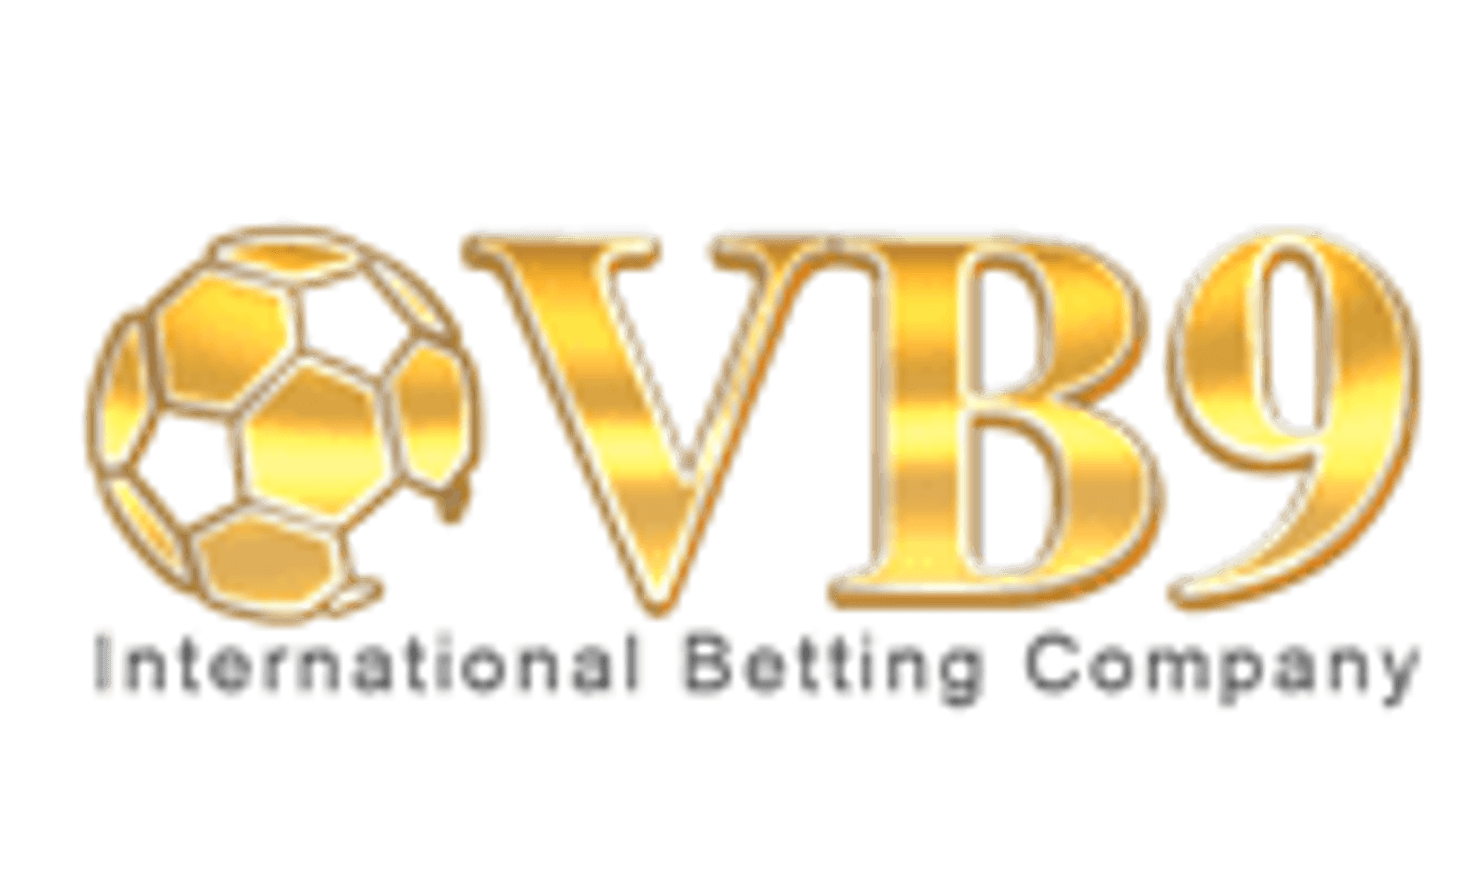 vb9 logo